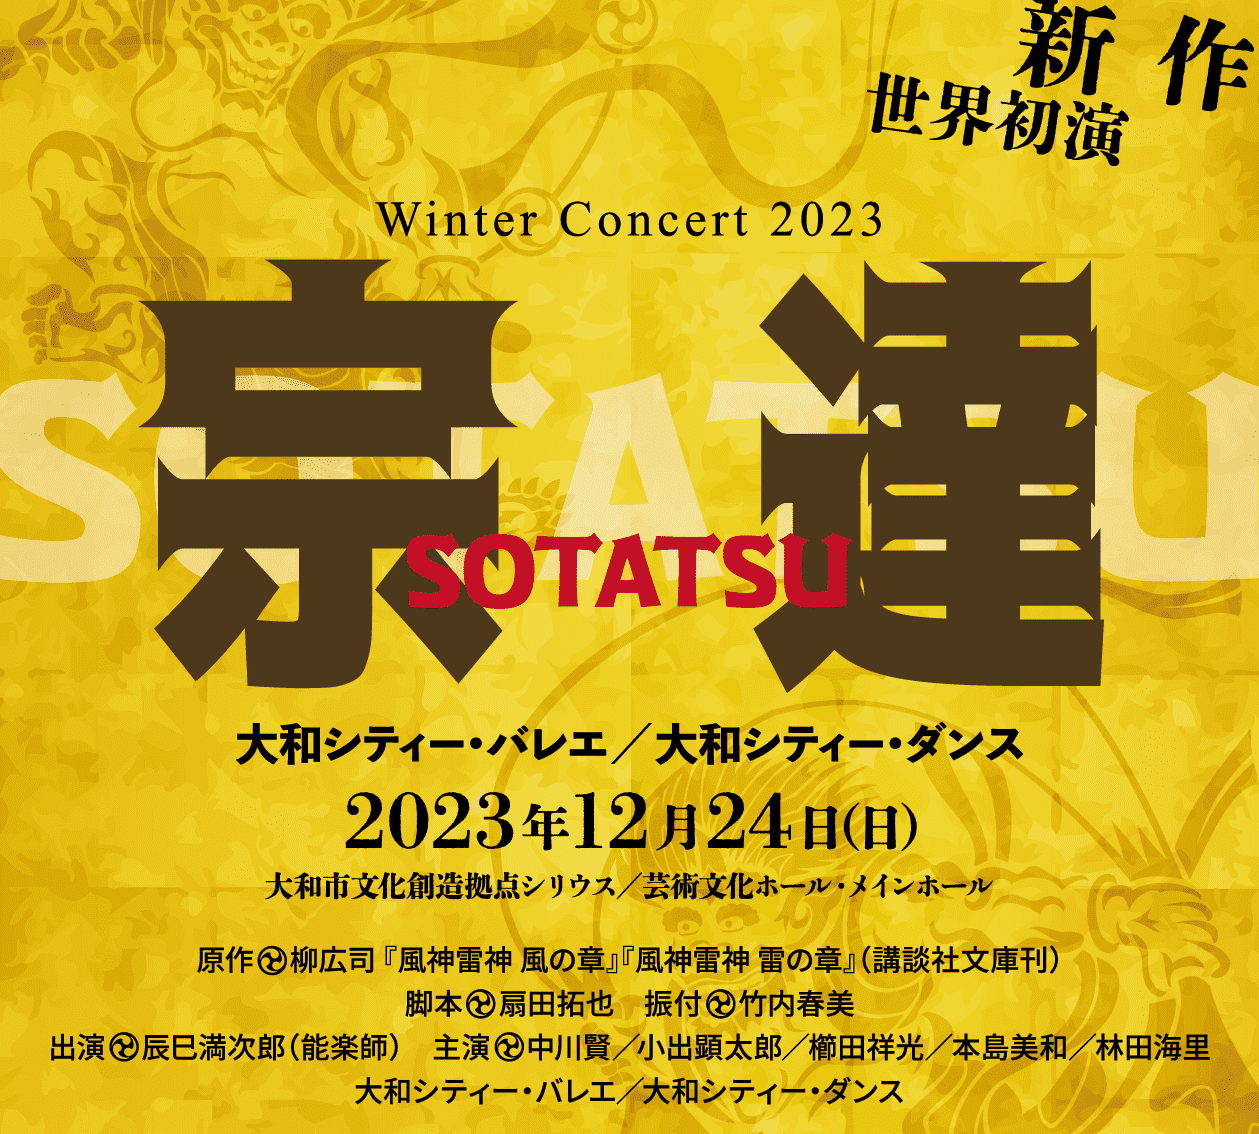 大和シティー・バレエ2023 Winter Concert『 宗達 』公演情報！